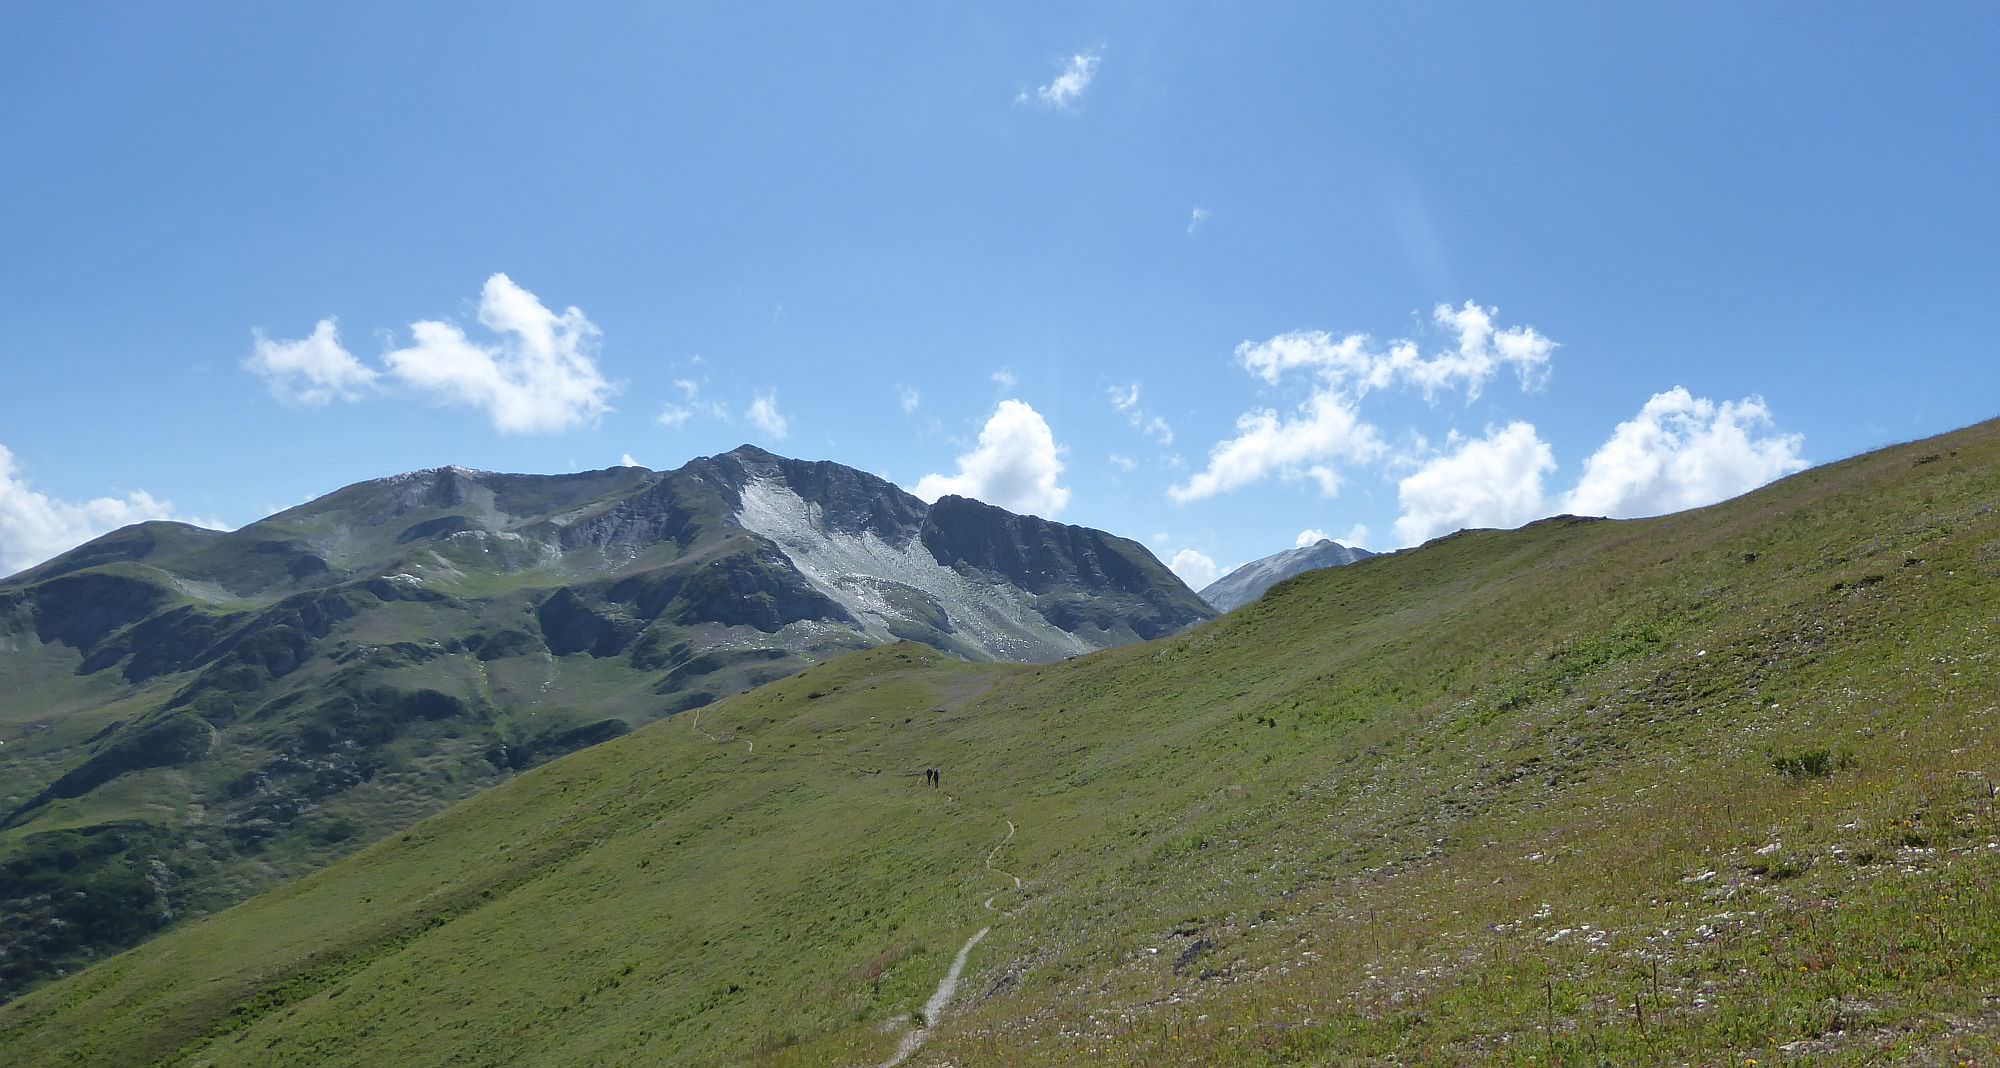 Hiking on the Svaneti ridge ridge